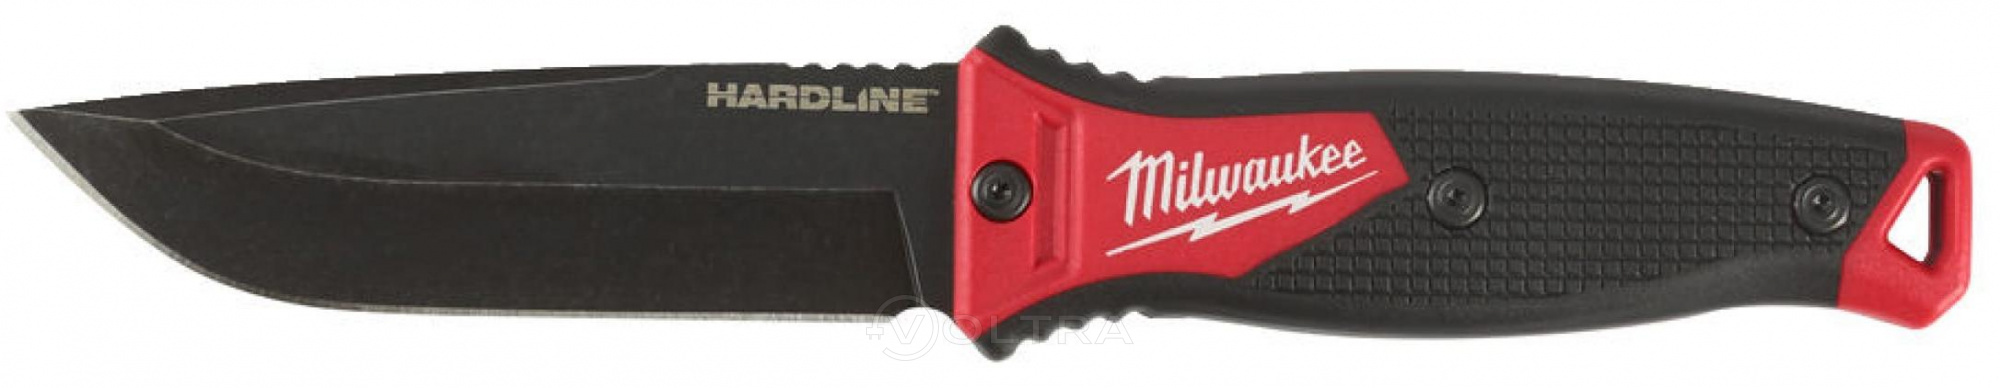 Нож строительный с фиксированным лезвием HardLine Milwaukee (4932464830)